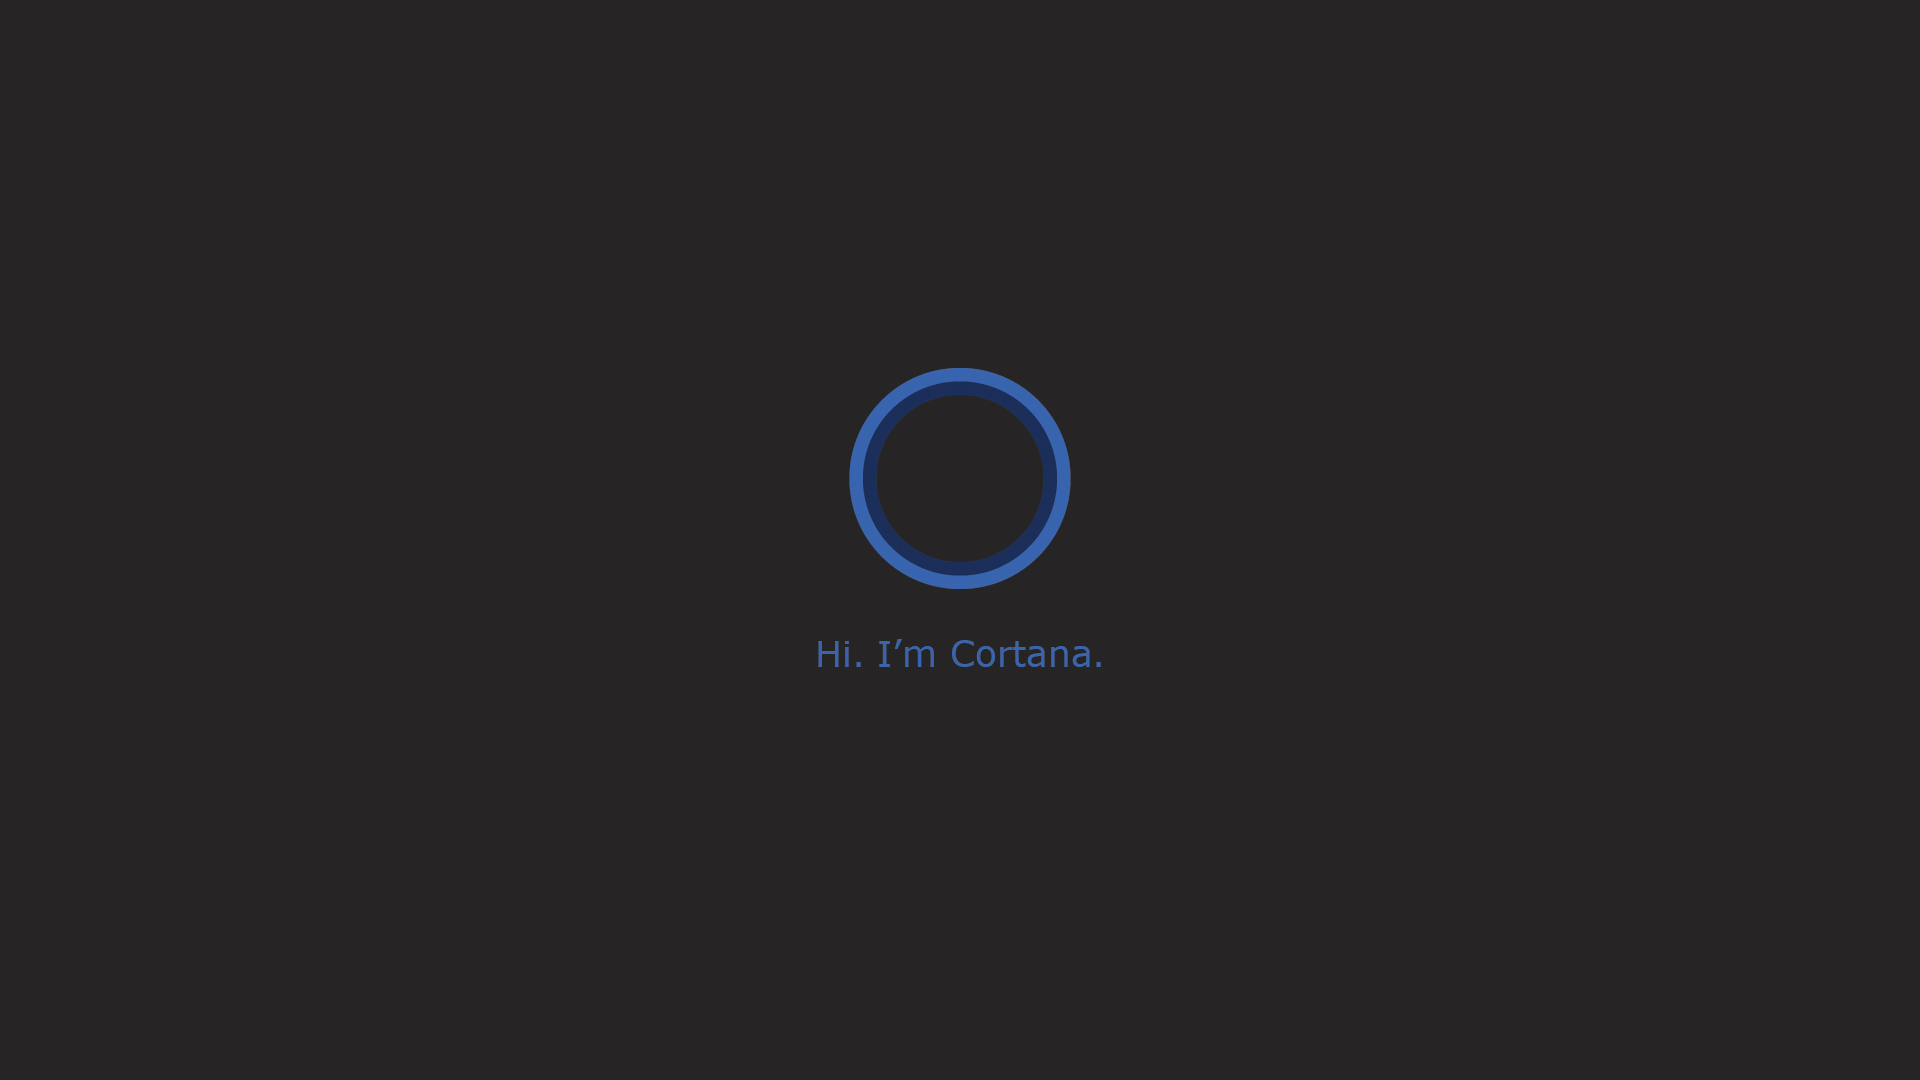 Cortana Desktop Wallpaper Made By Dutch Valley Tech